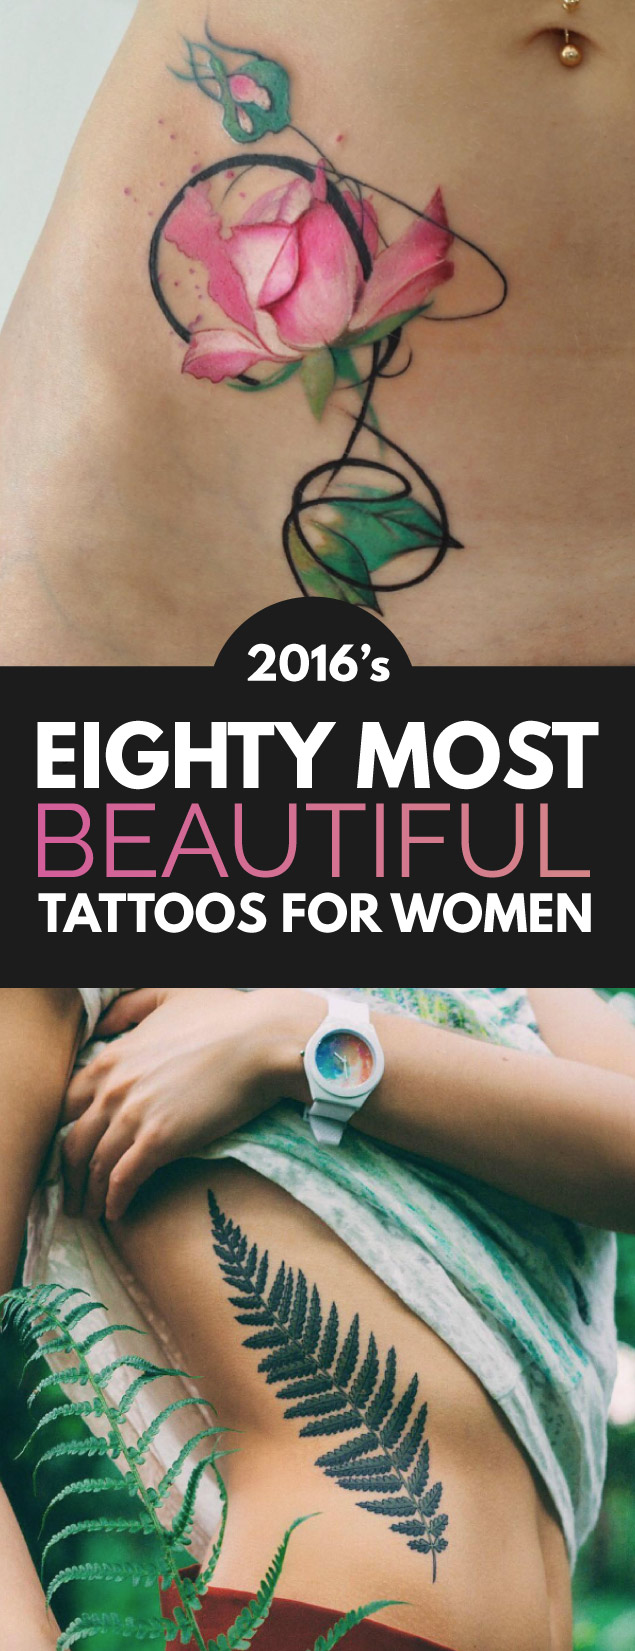 2016's Eighty Most Beautiful Tattoo Designs | TattooBlend